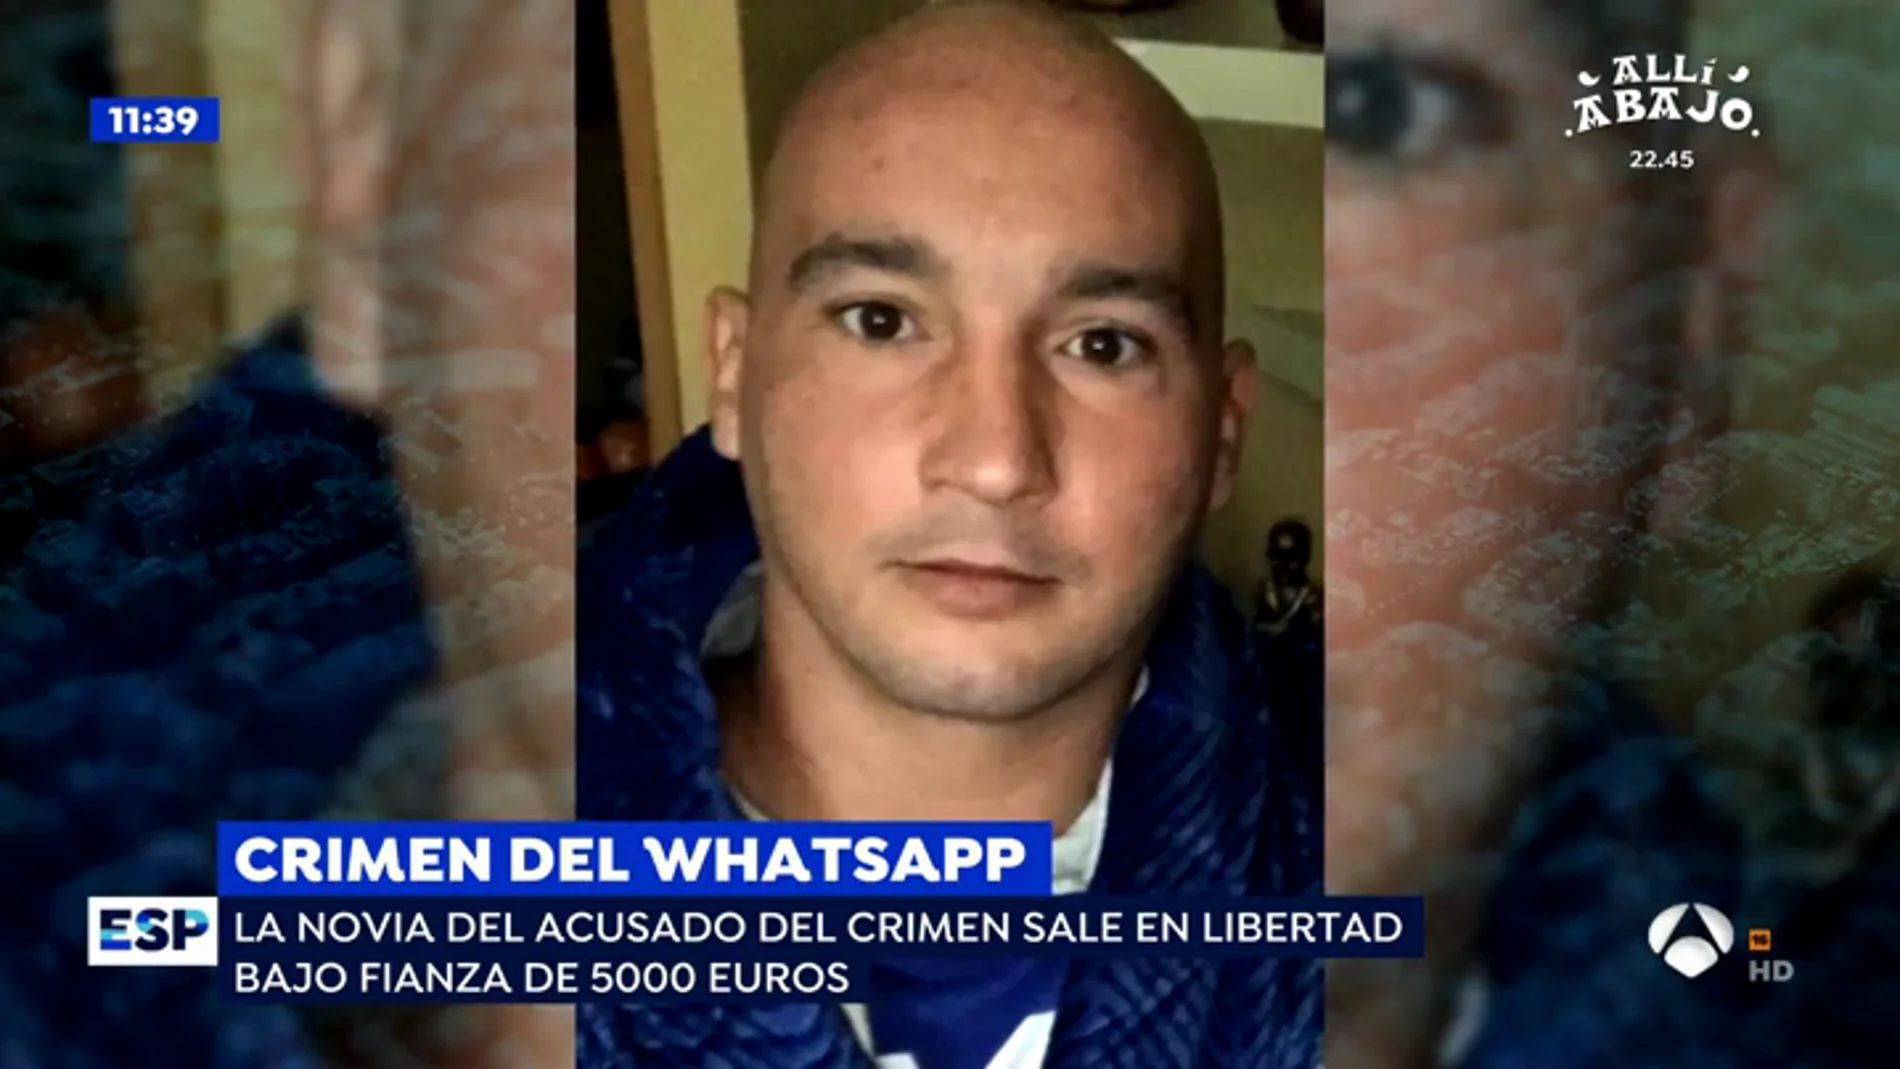 La familia del apuñalado en el 'crimen del WhatsApp' pide justicia: "Media España ha visto el vídeo"